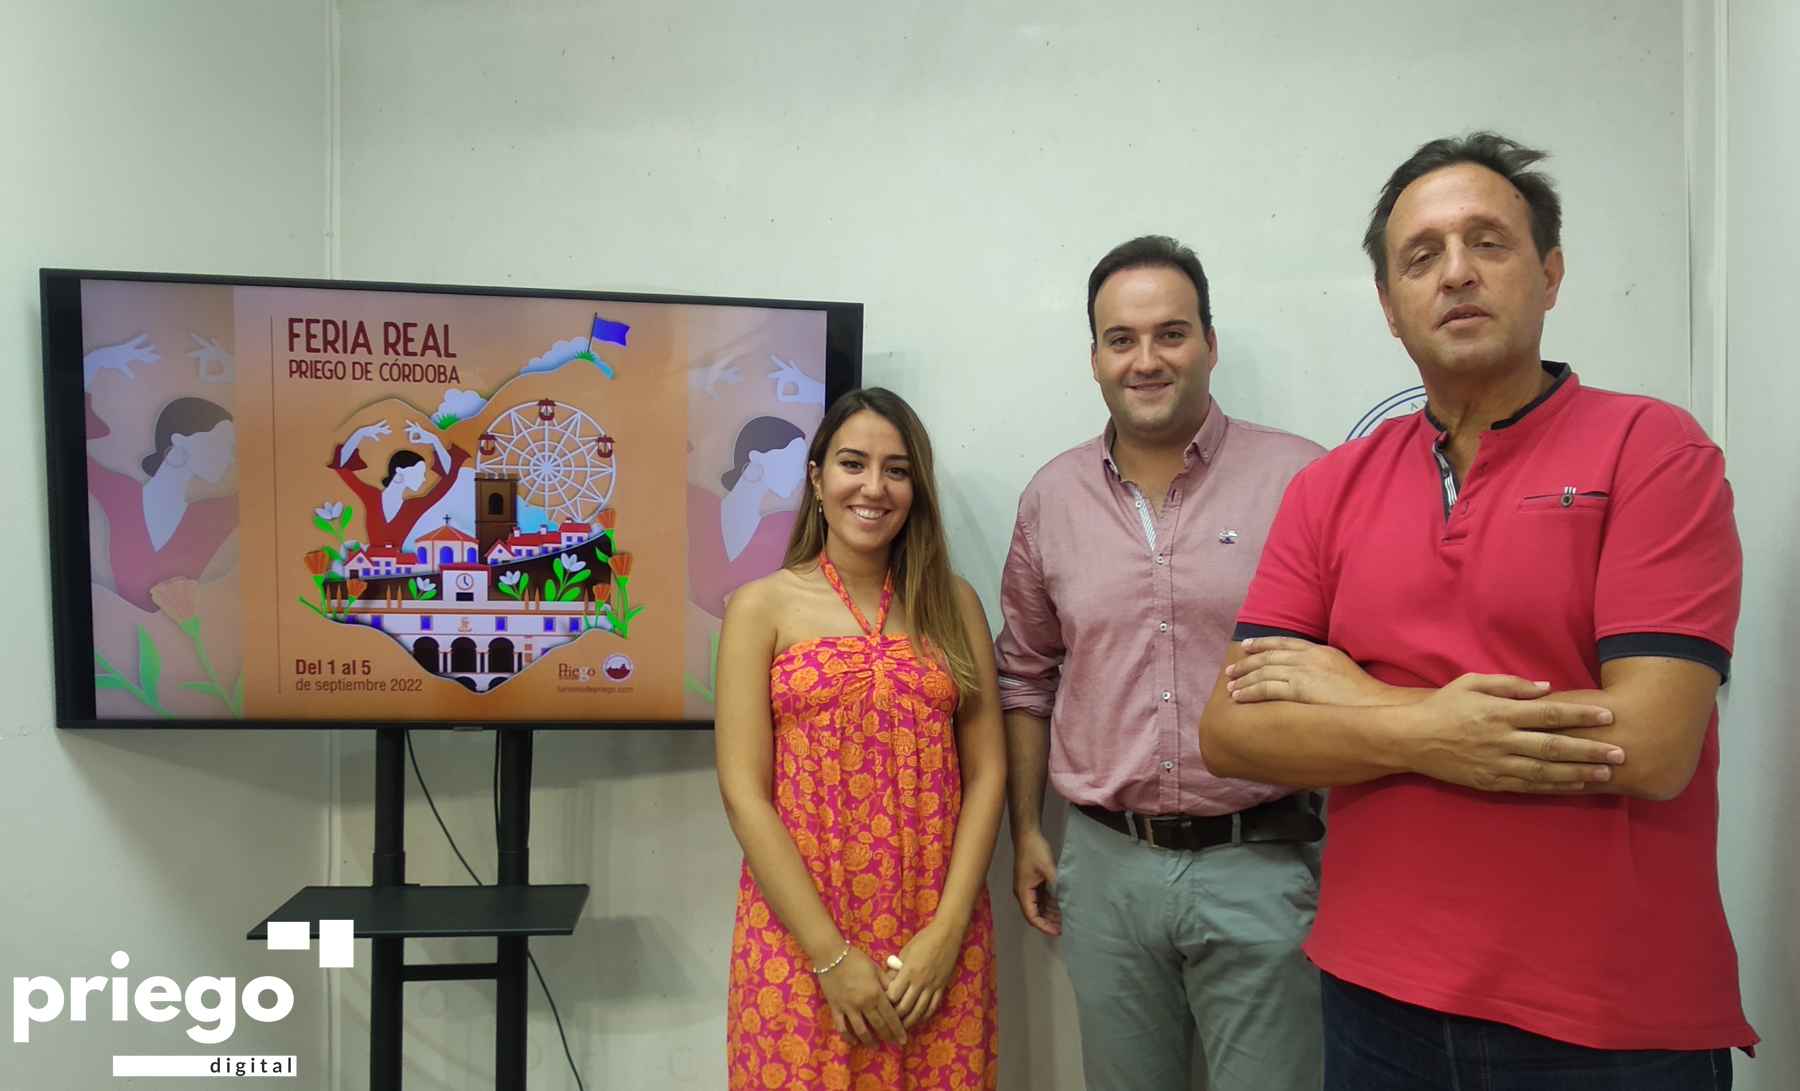 Janet Aguilera, Juanra Valdivia y Javier Ibáñez, hoy junto al cartel anunciador de la Feria Real de Priego 2022.